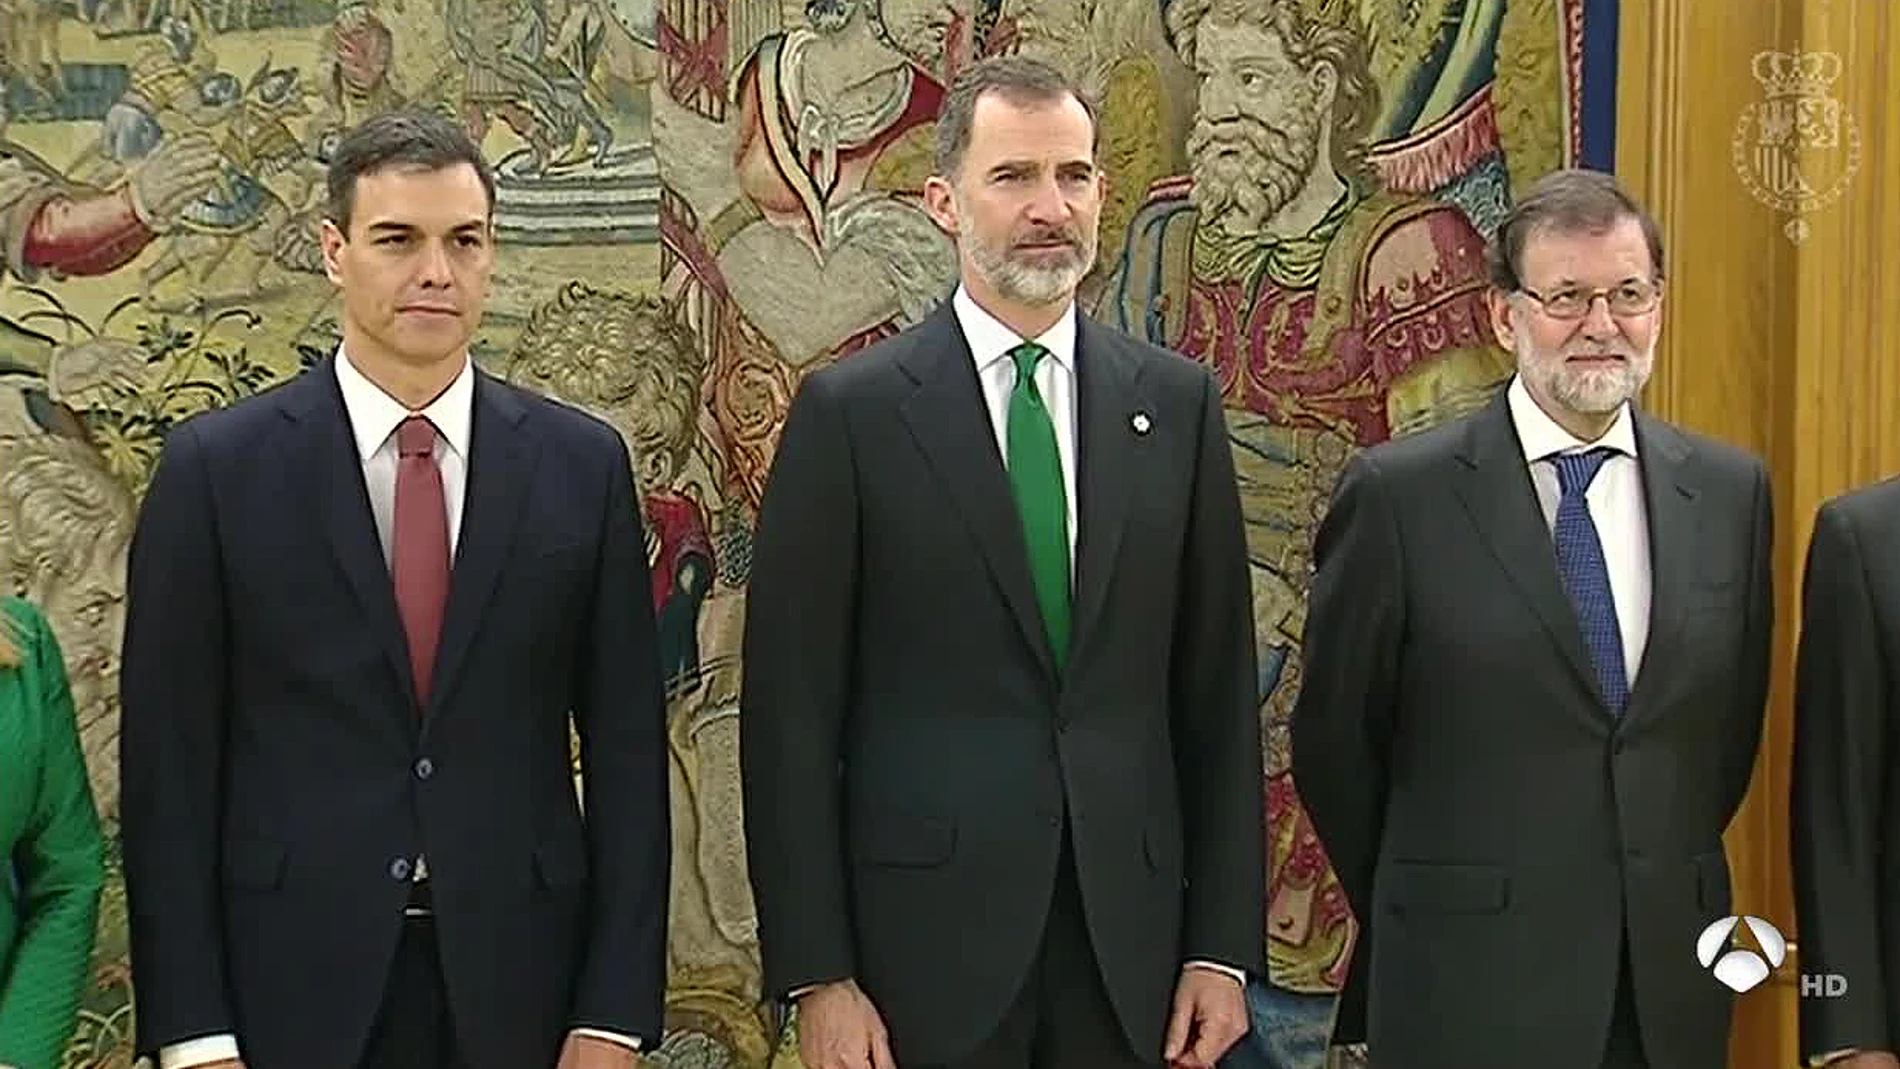 Antena 3 Noticias Fin de Semana (02-06-18) Pedro Sánchez toma posesión como nuevo presidente del Gobierno de España tras prometer su cargo ante el Rey Felipe VI